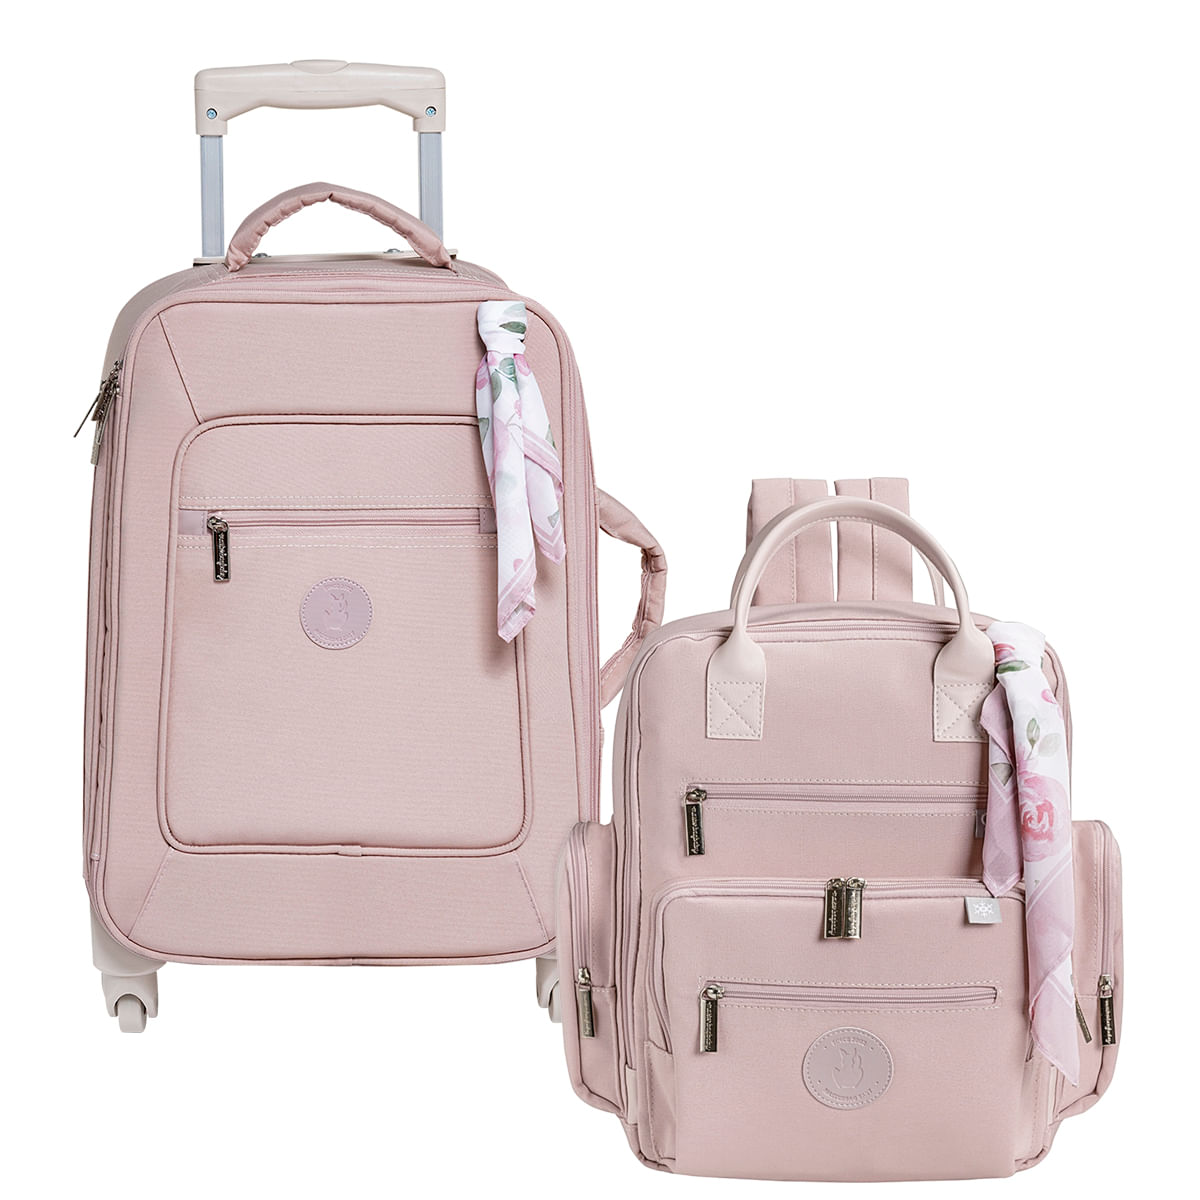 Bolsa, mala e mochila maternidade: sete opções a partir de R$ 159